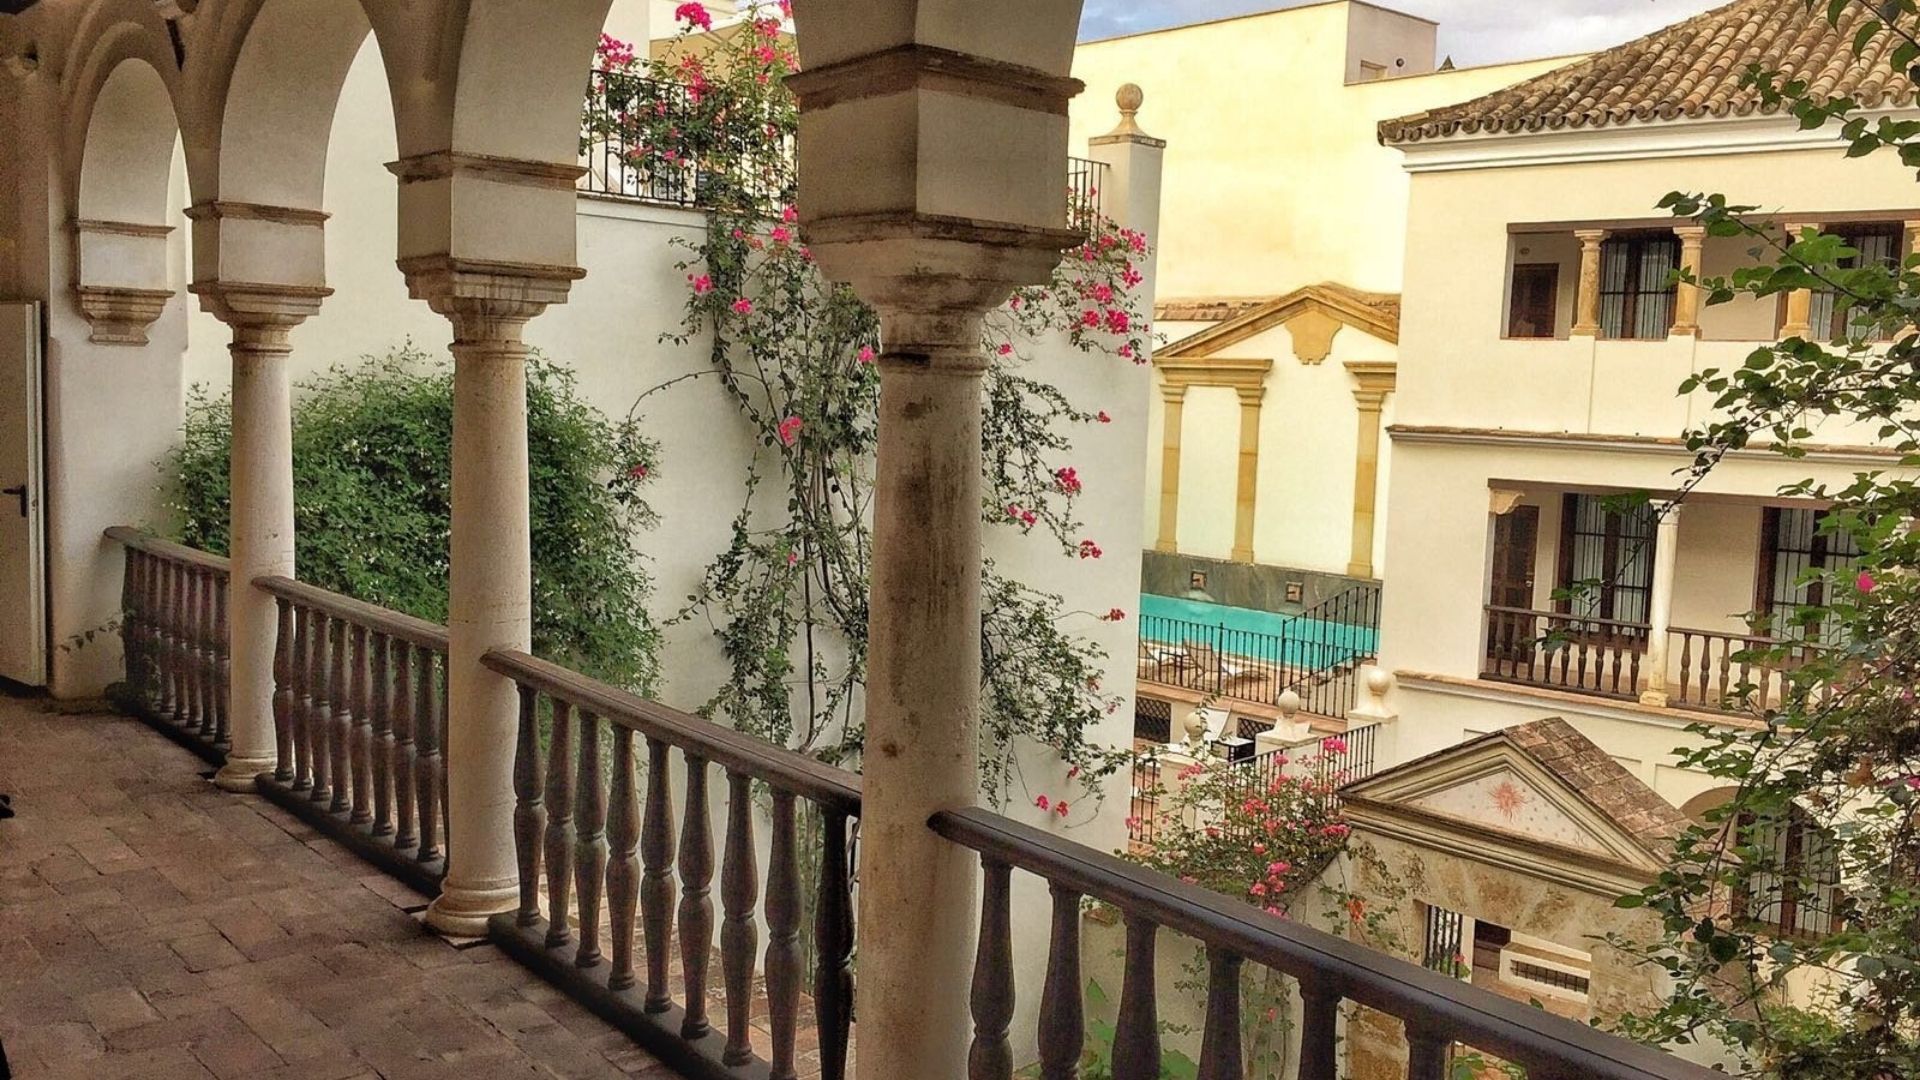 Las Casas de la Judería de Córdoba - Courtyard